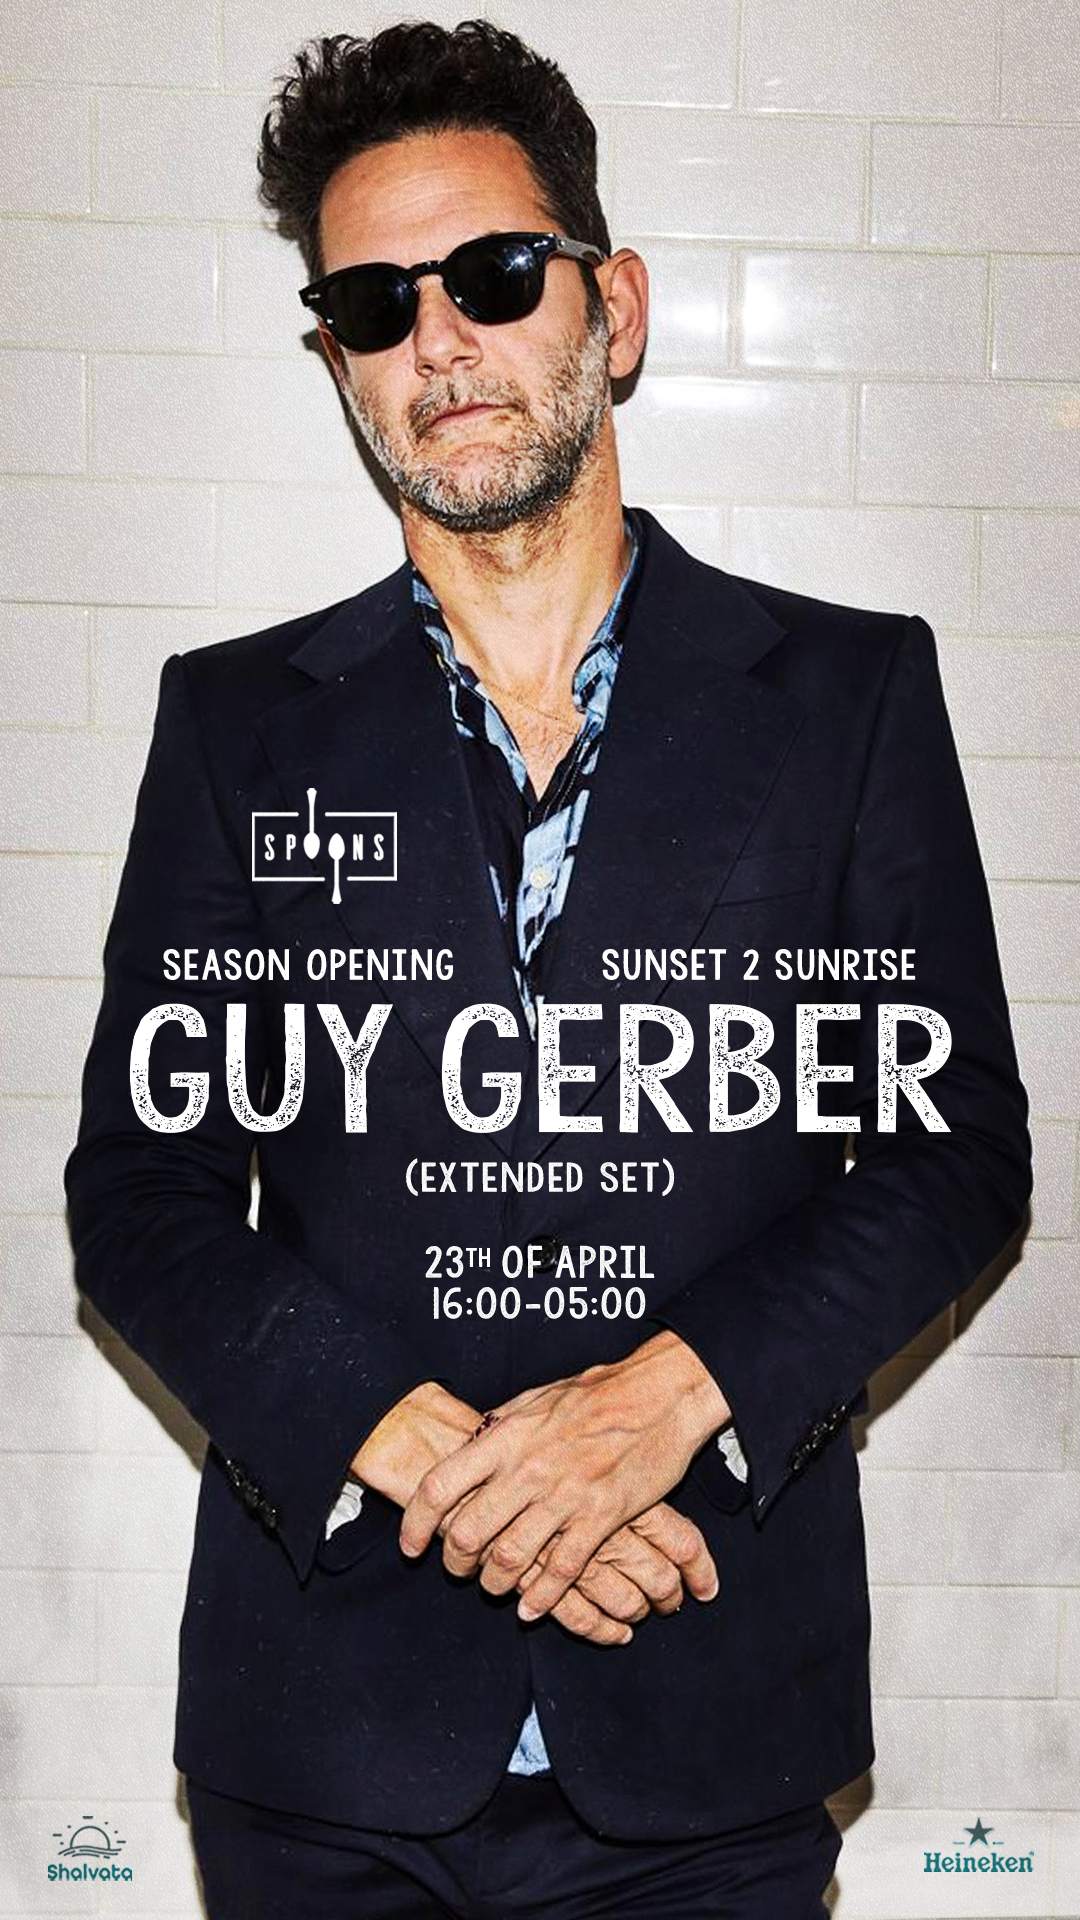 Spoons: Guy Gerber - season opening - Página frontal